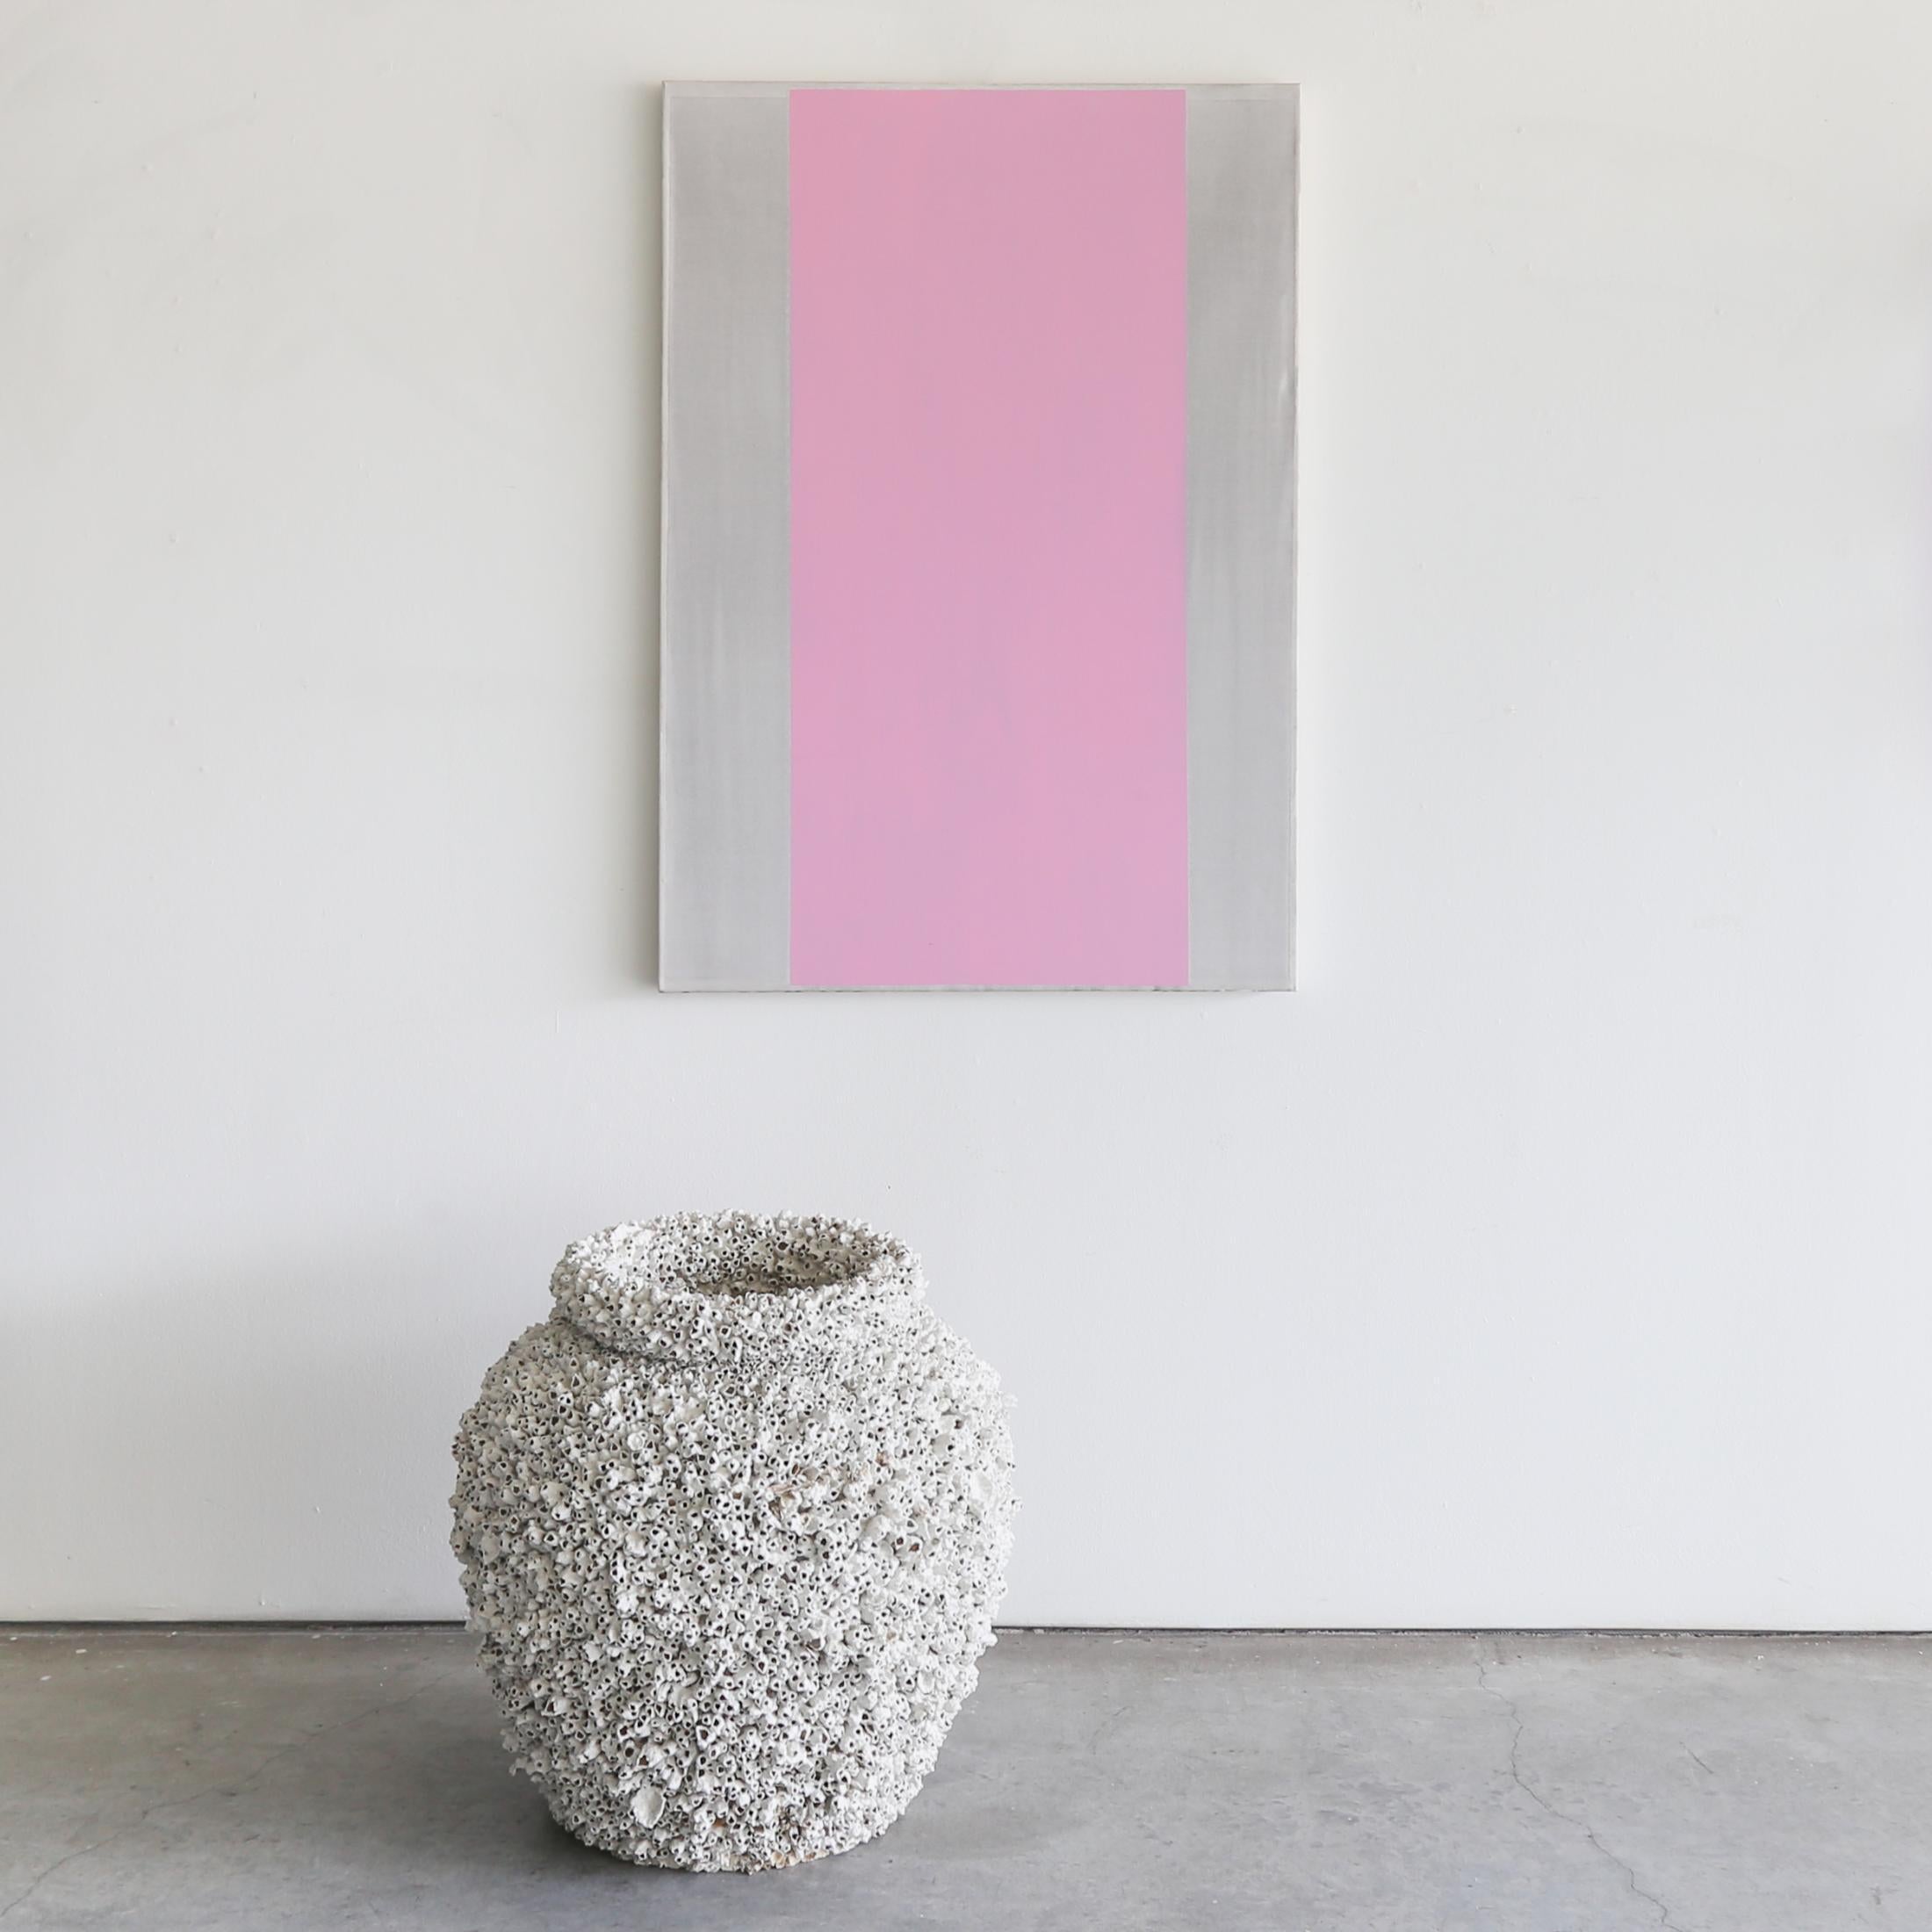 A Trace of Something I Want to Feel Again des Künstlers Douglas Witmer ist ein rosa und graues, zeitgenössisches, abstraktes, minimalistisches Gemälde aus schwarzem Gesso und Acryl auf Leinwand mit den Maßen 47 x 33 und einem Preis von 4.500